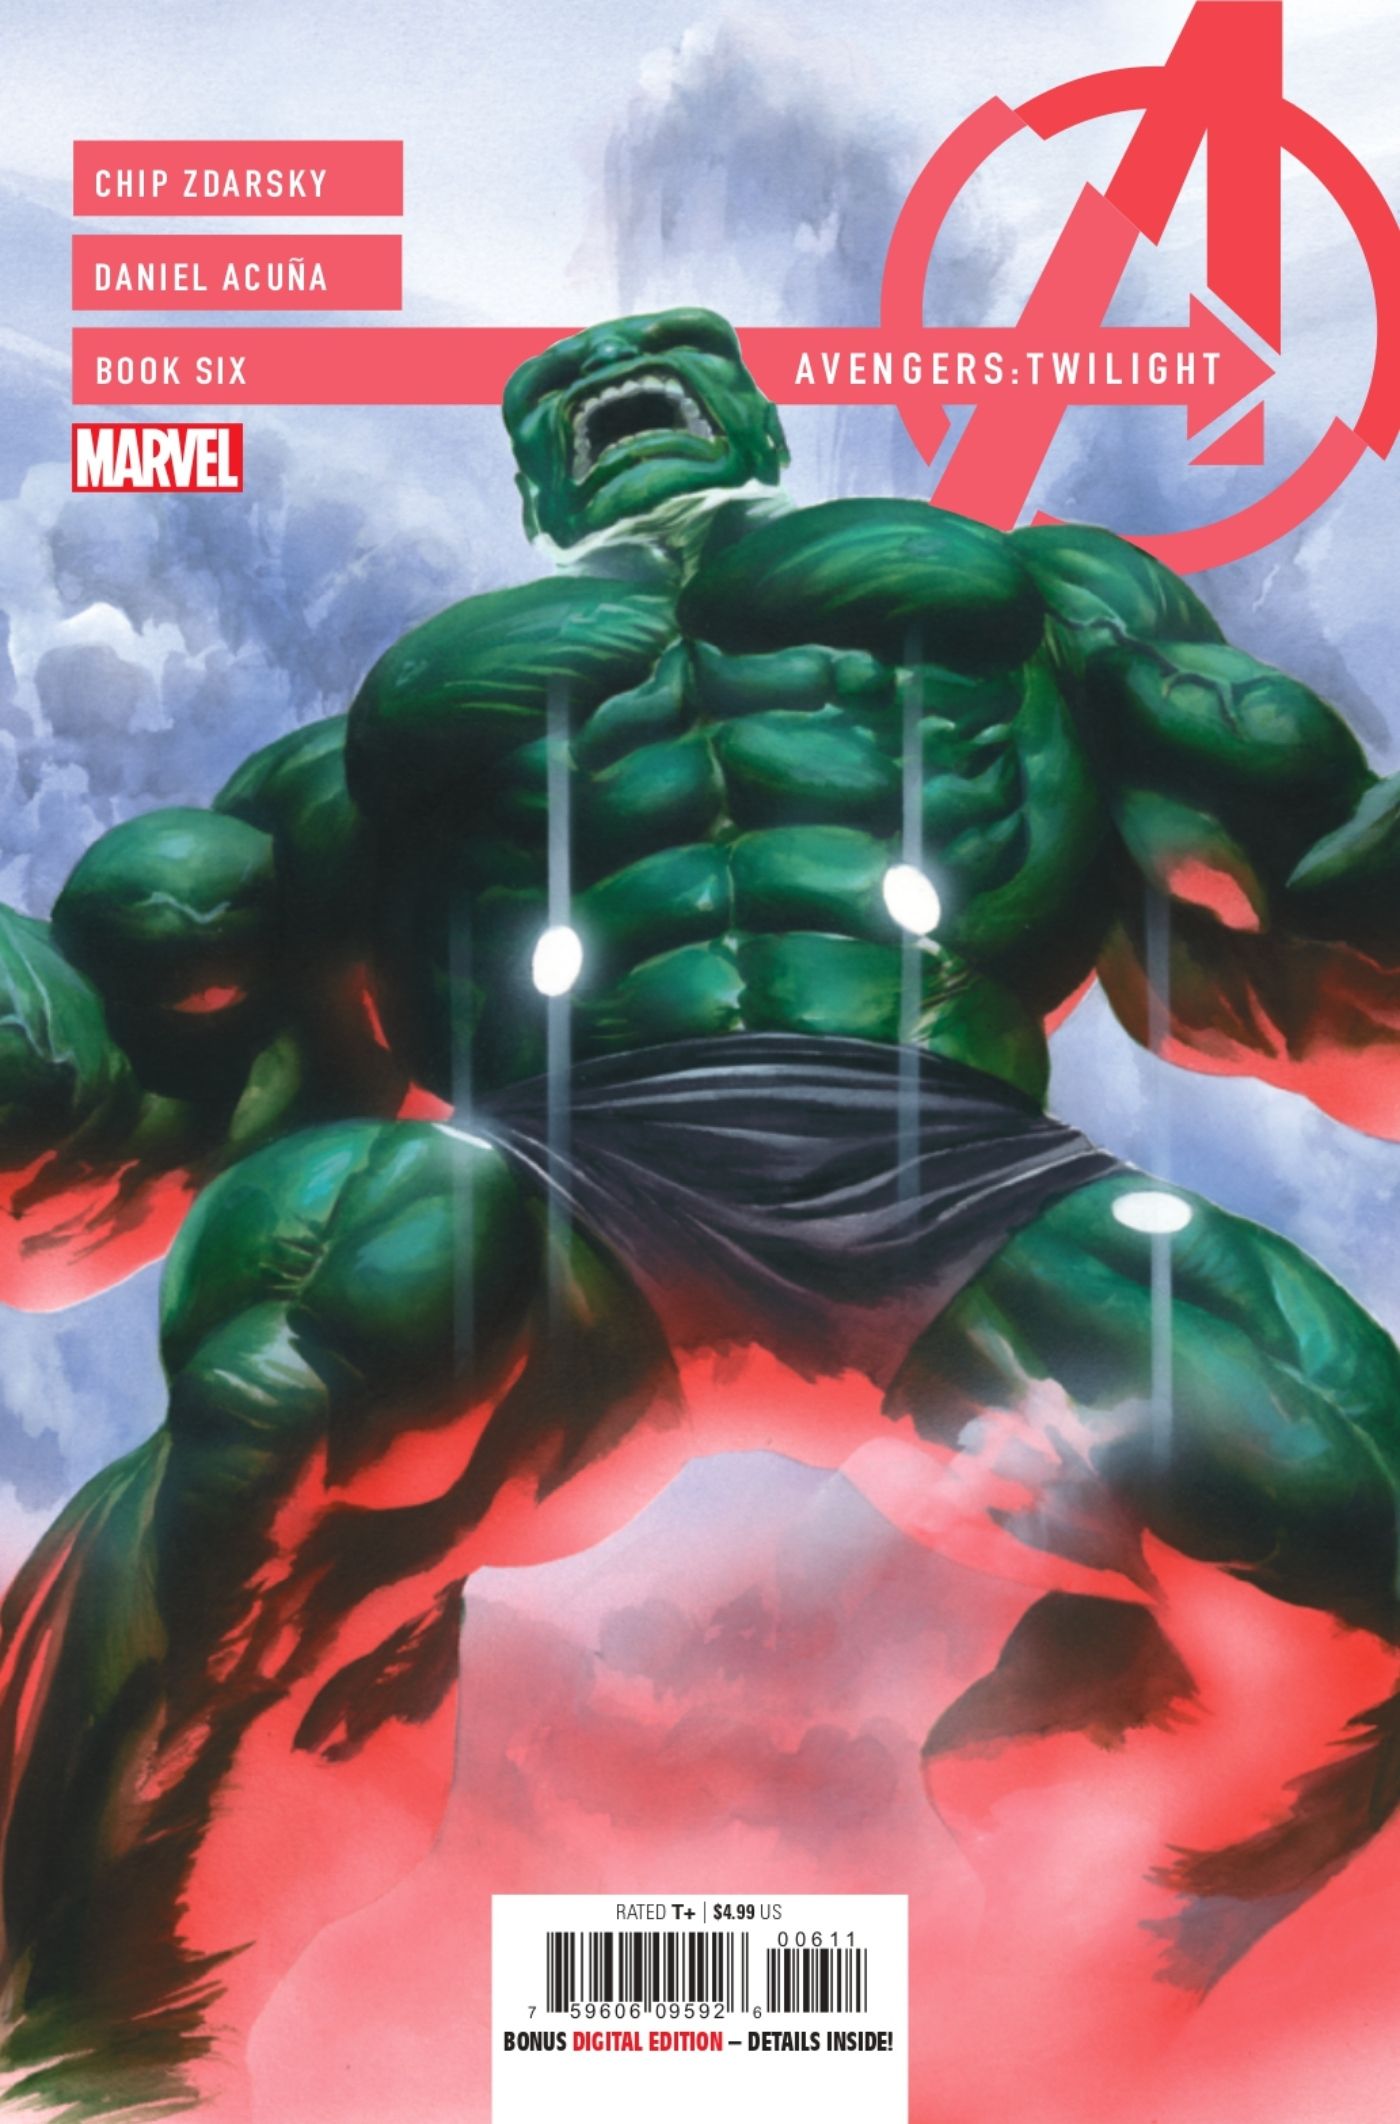 Okładka Avengers: Zmierzch nr 6 przedstawiająca Hulka.